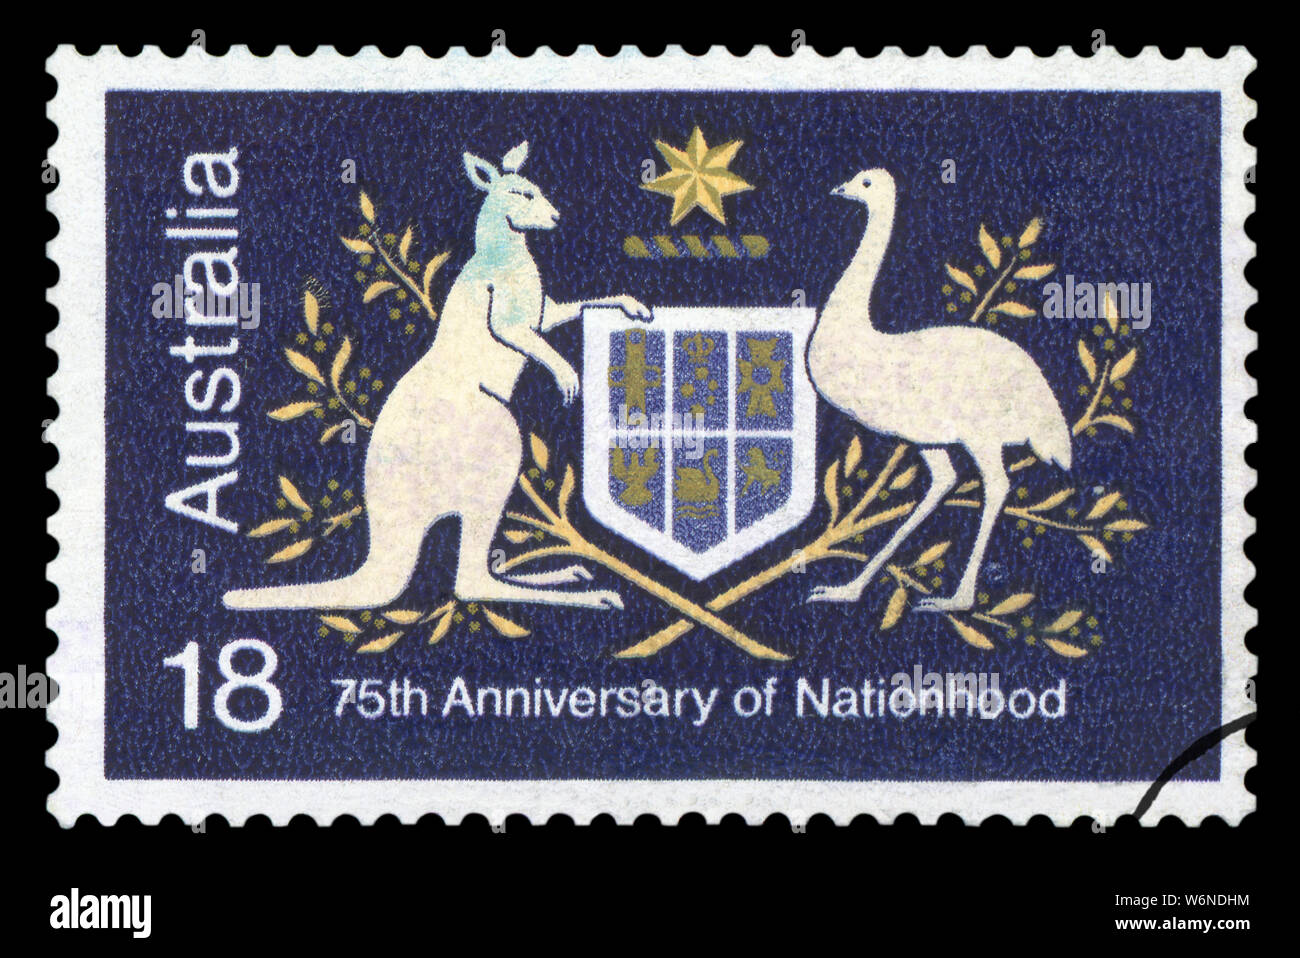 L'AUSTRALIE - circa 1976 : timbre imprimé en Australie illustrant 75e anniversaire de la nation, vers 1976. Banque D'Images